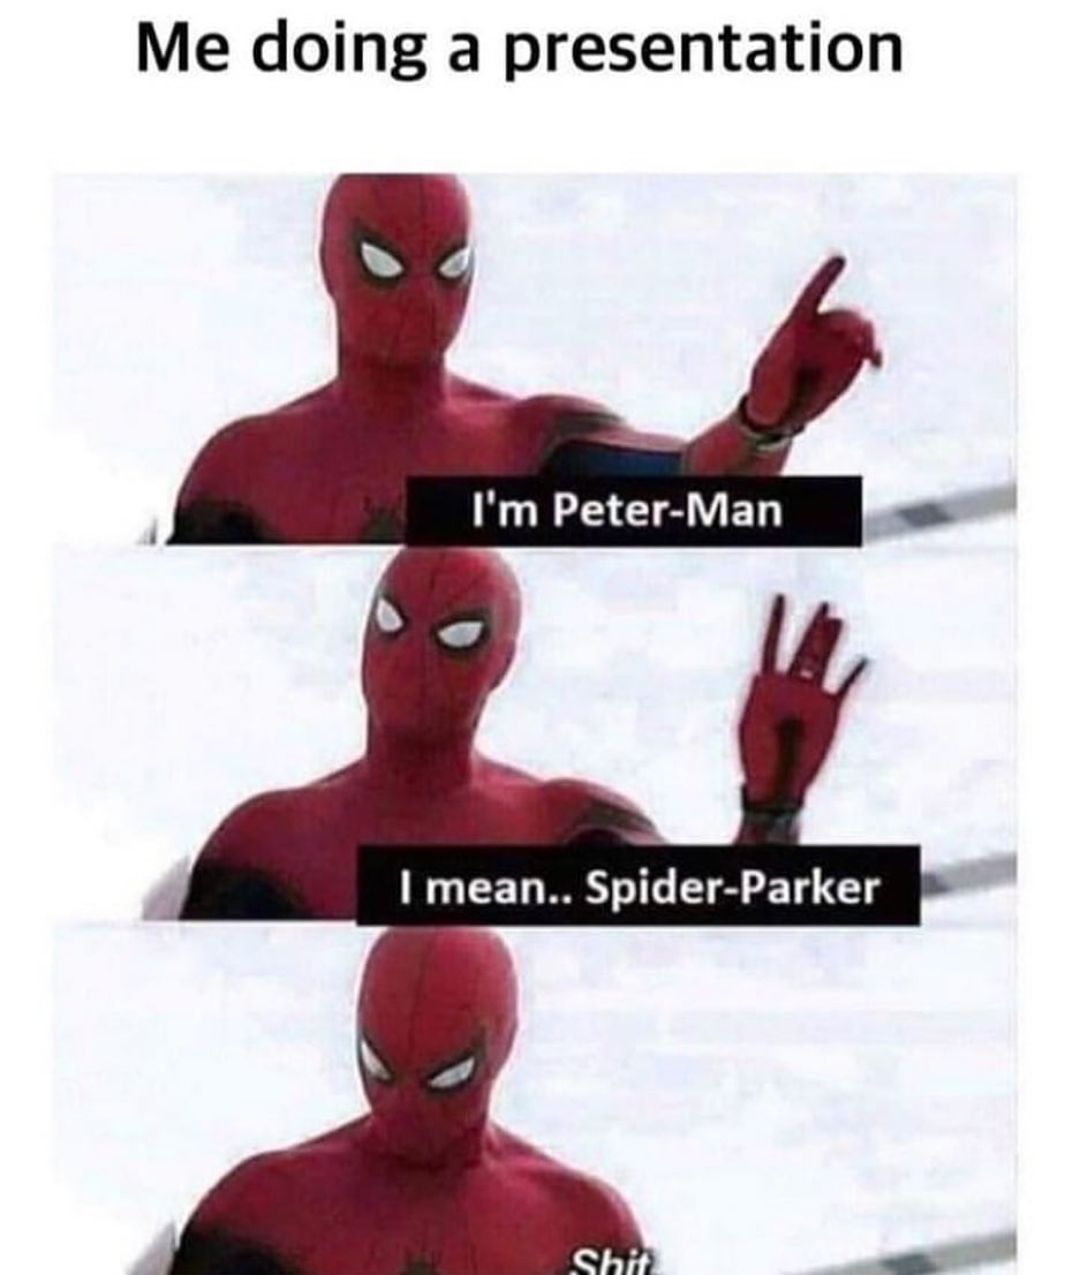 Pider-Sparker